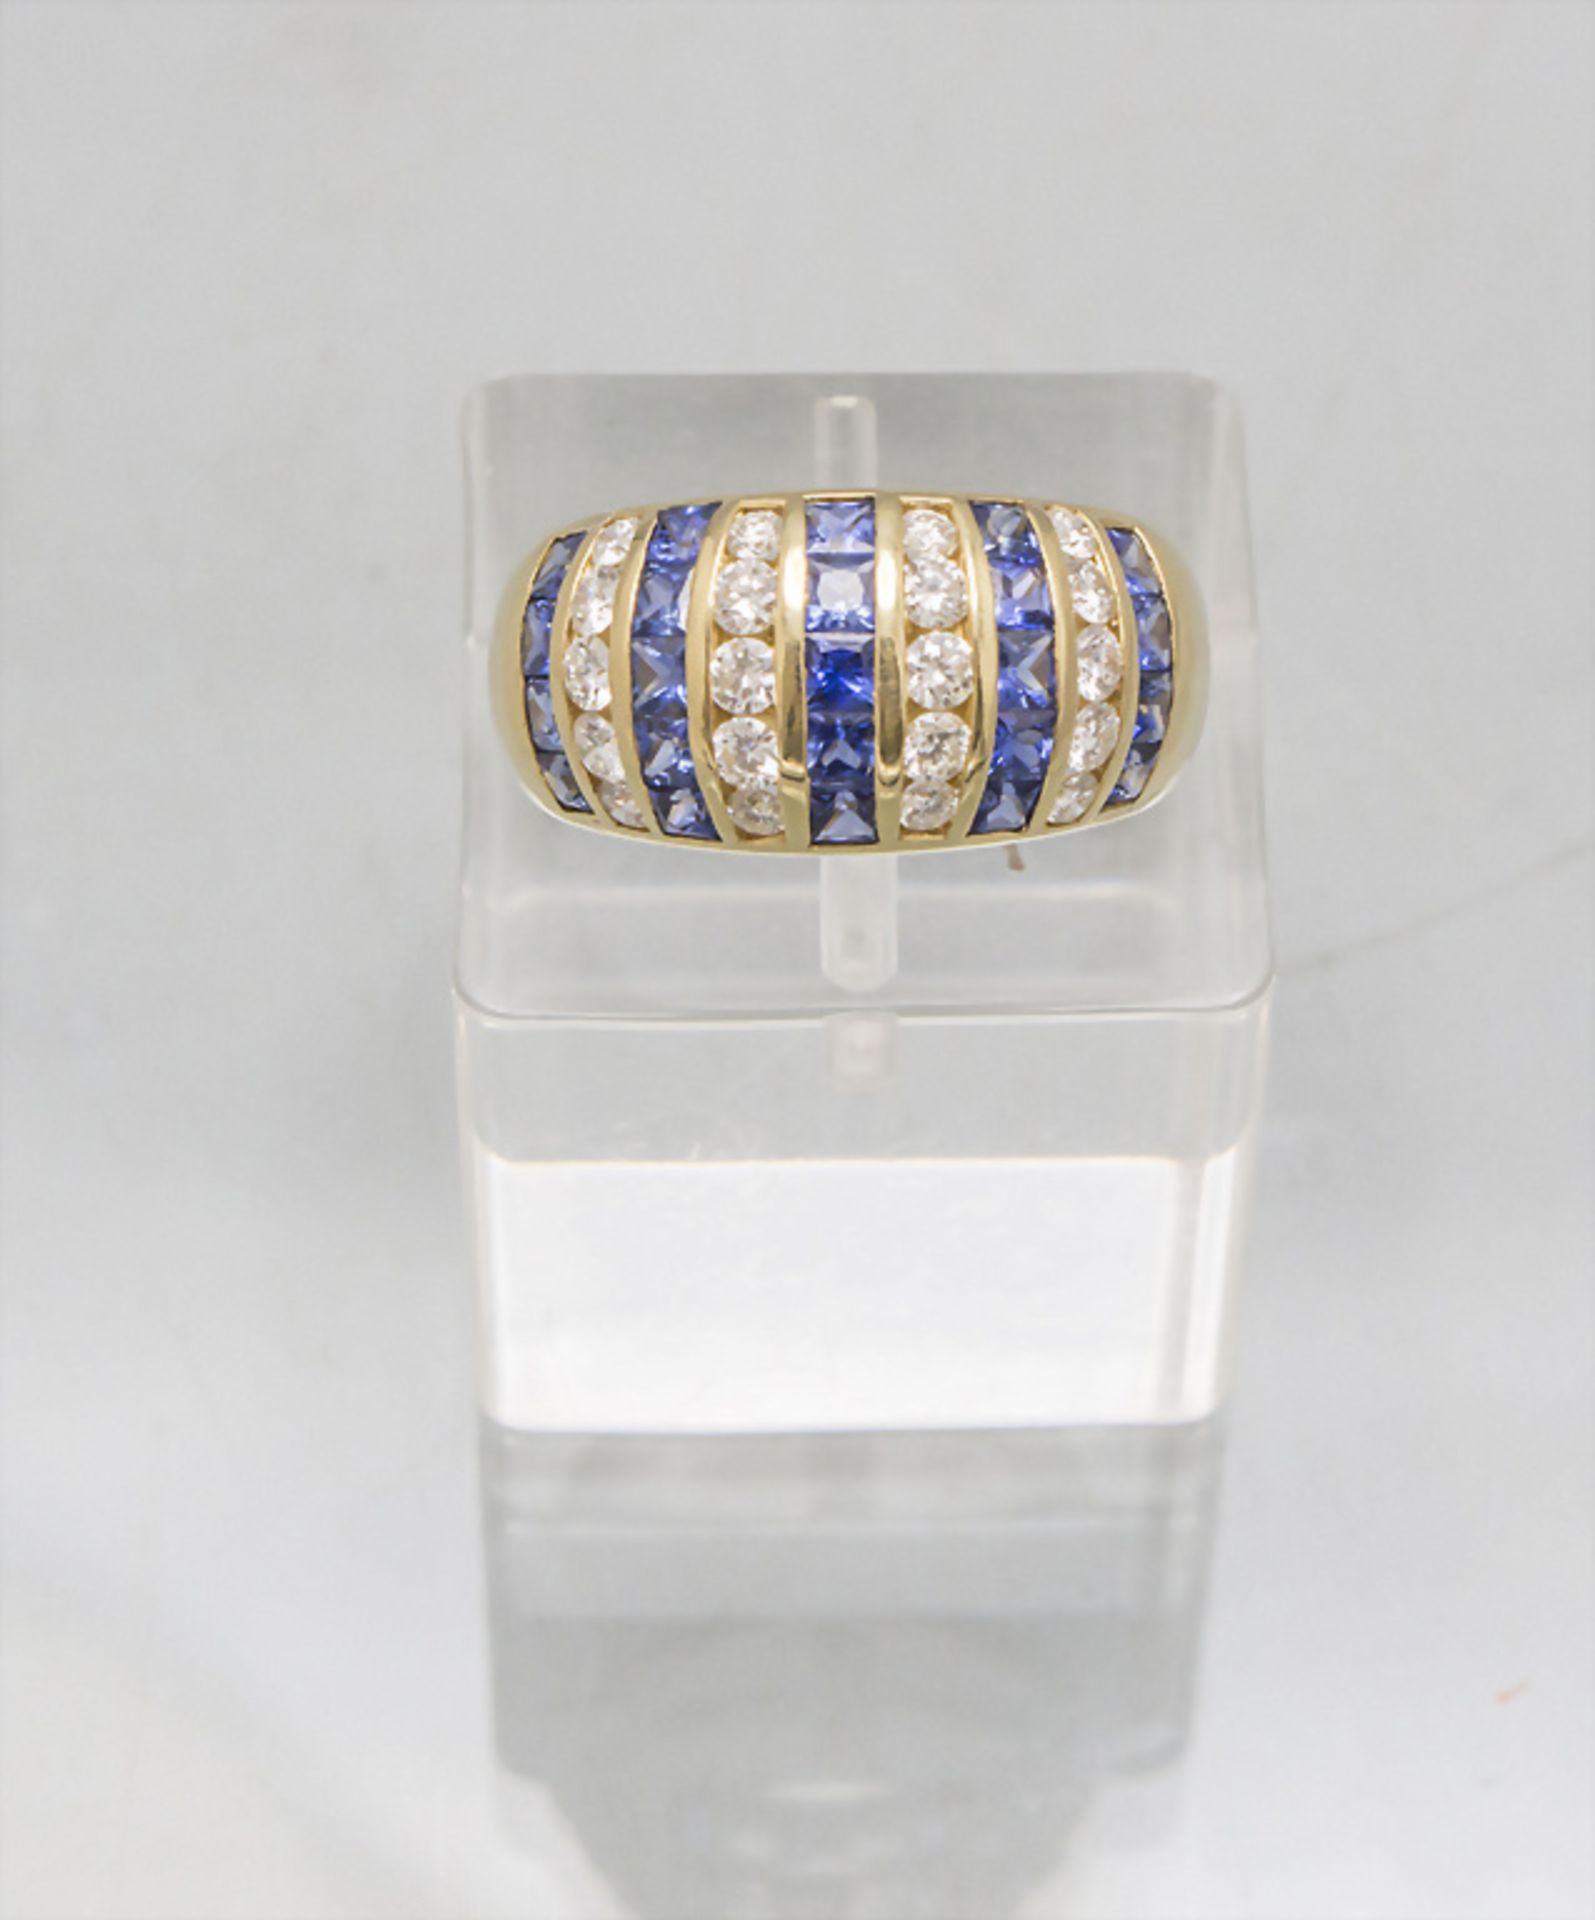 Damenring mit Diamanten und Saphiren / A ladies 18 ct gold ring with diamonds and sapphires